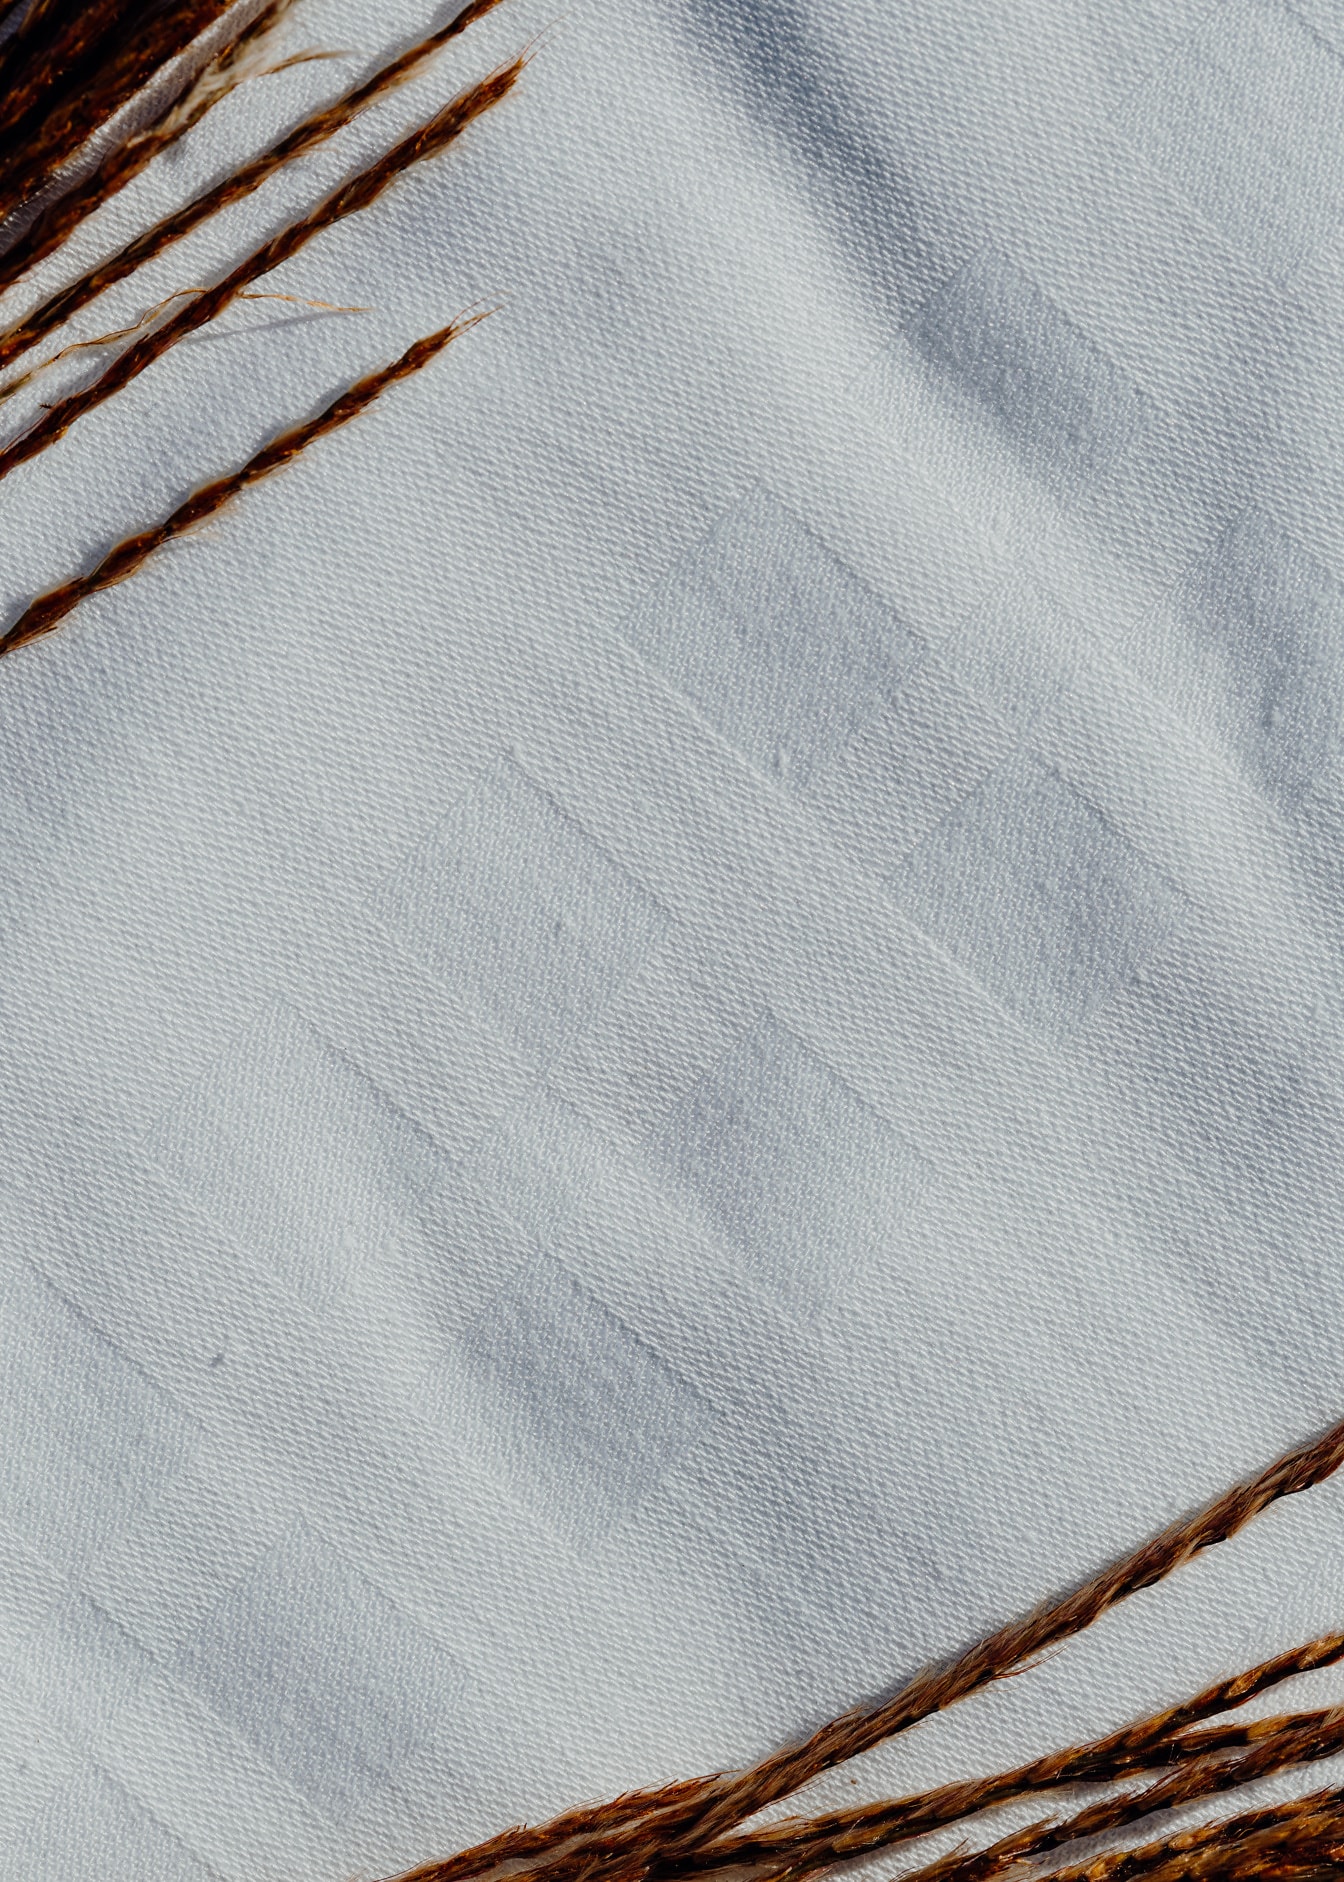 白い綿布の接写txtureに長方形のパターン